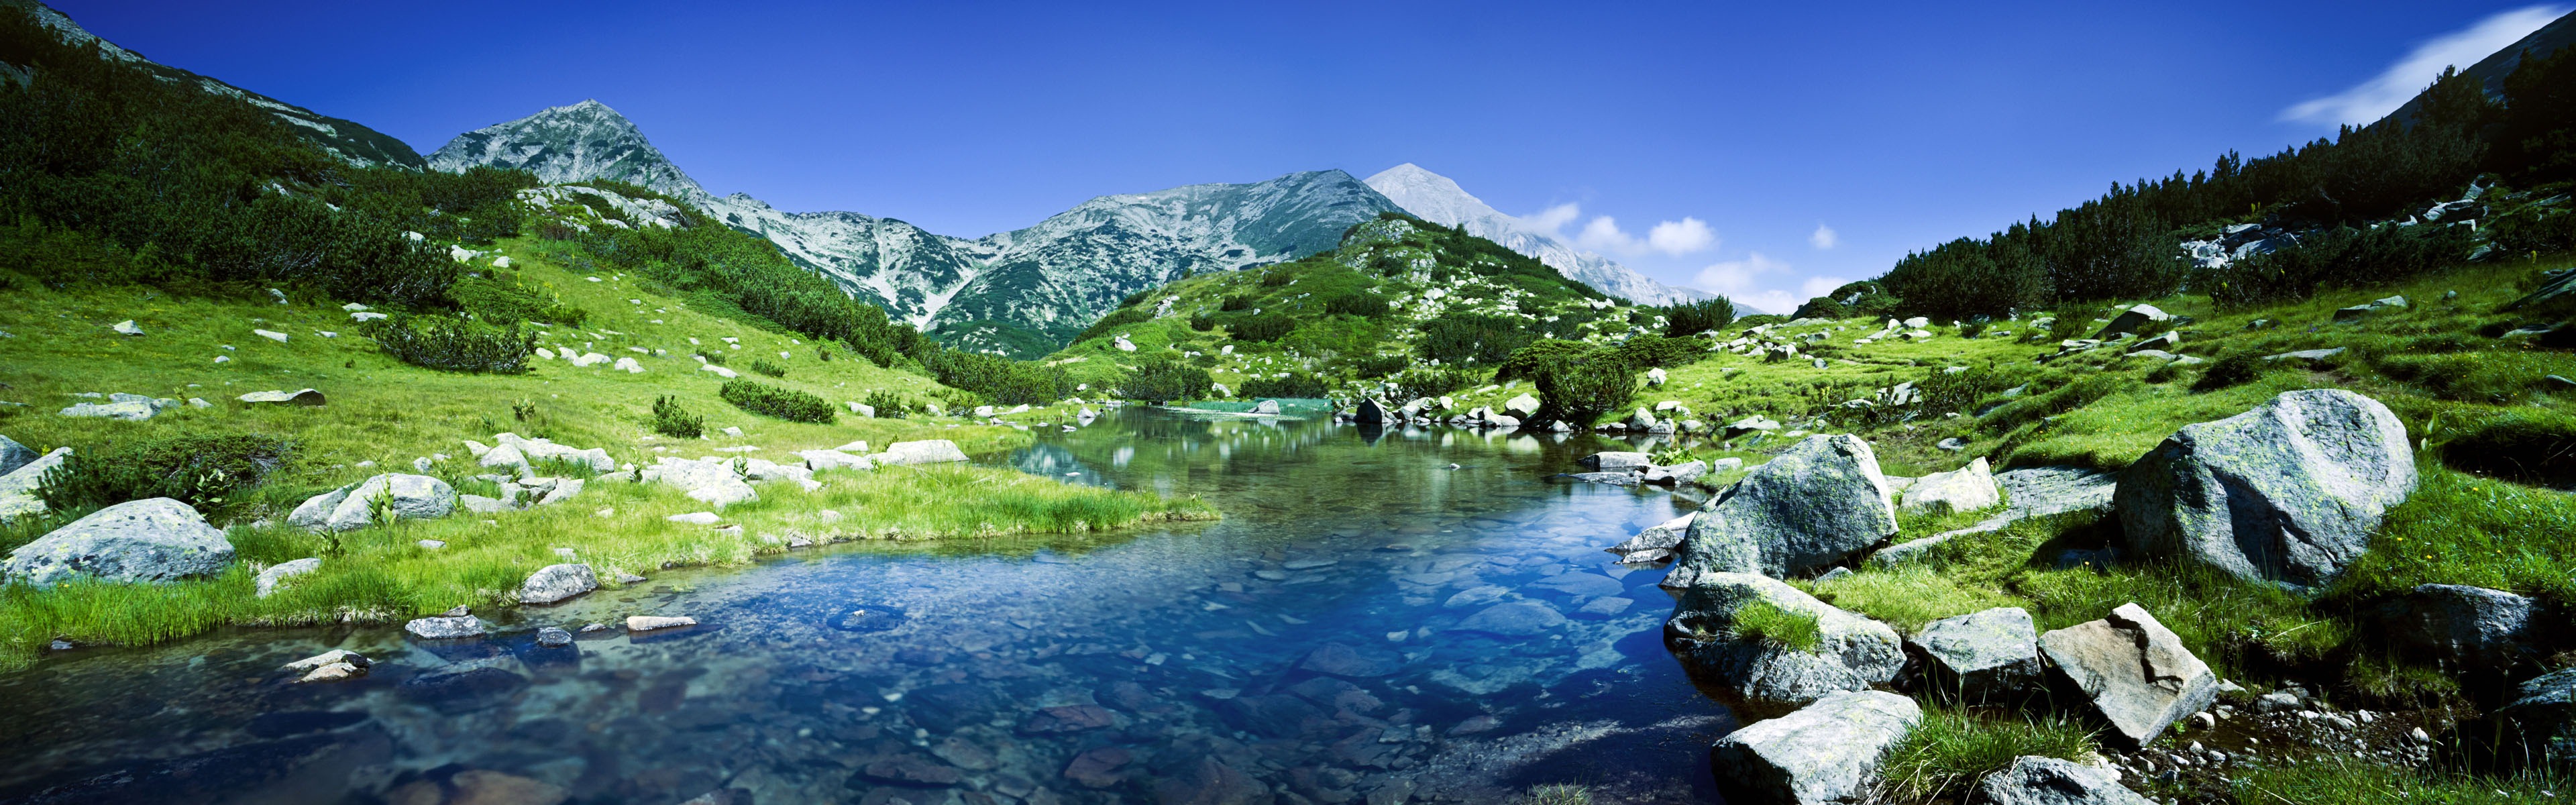 Windows 8 offiziellen Panorama Tapete, Wellen, Wälder, majestätische Berge #17 - 3840x1200